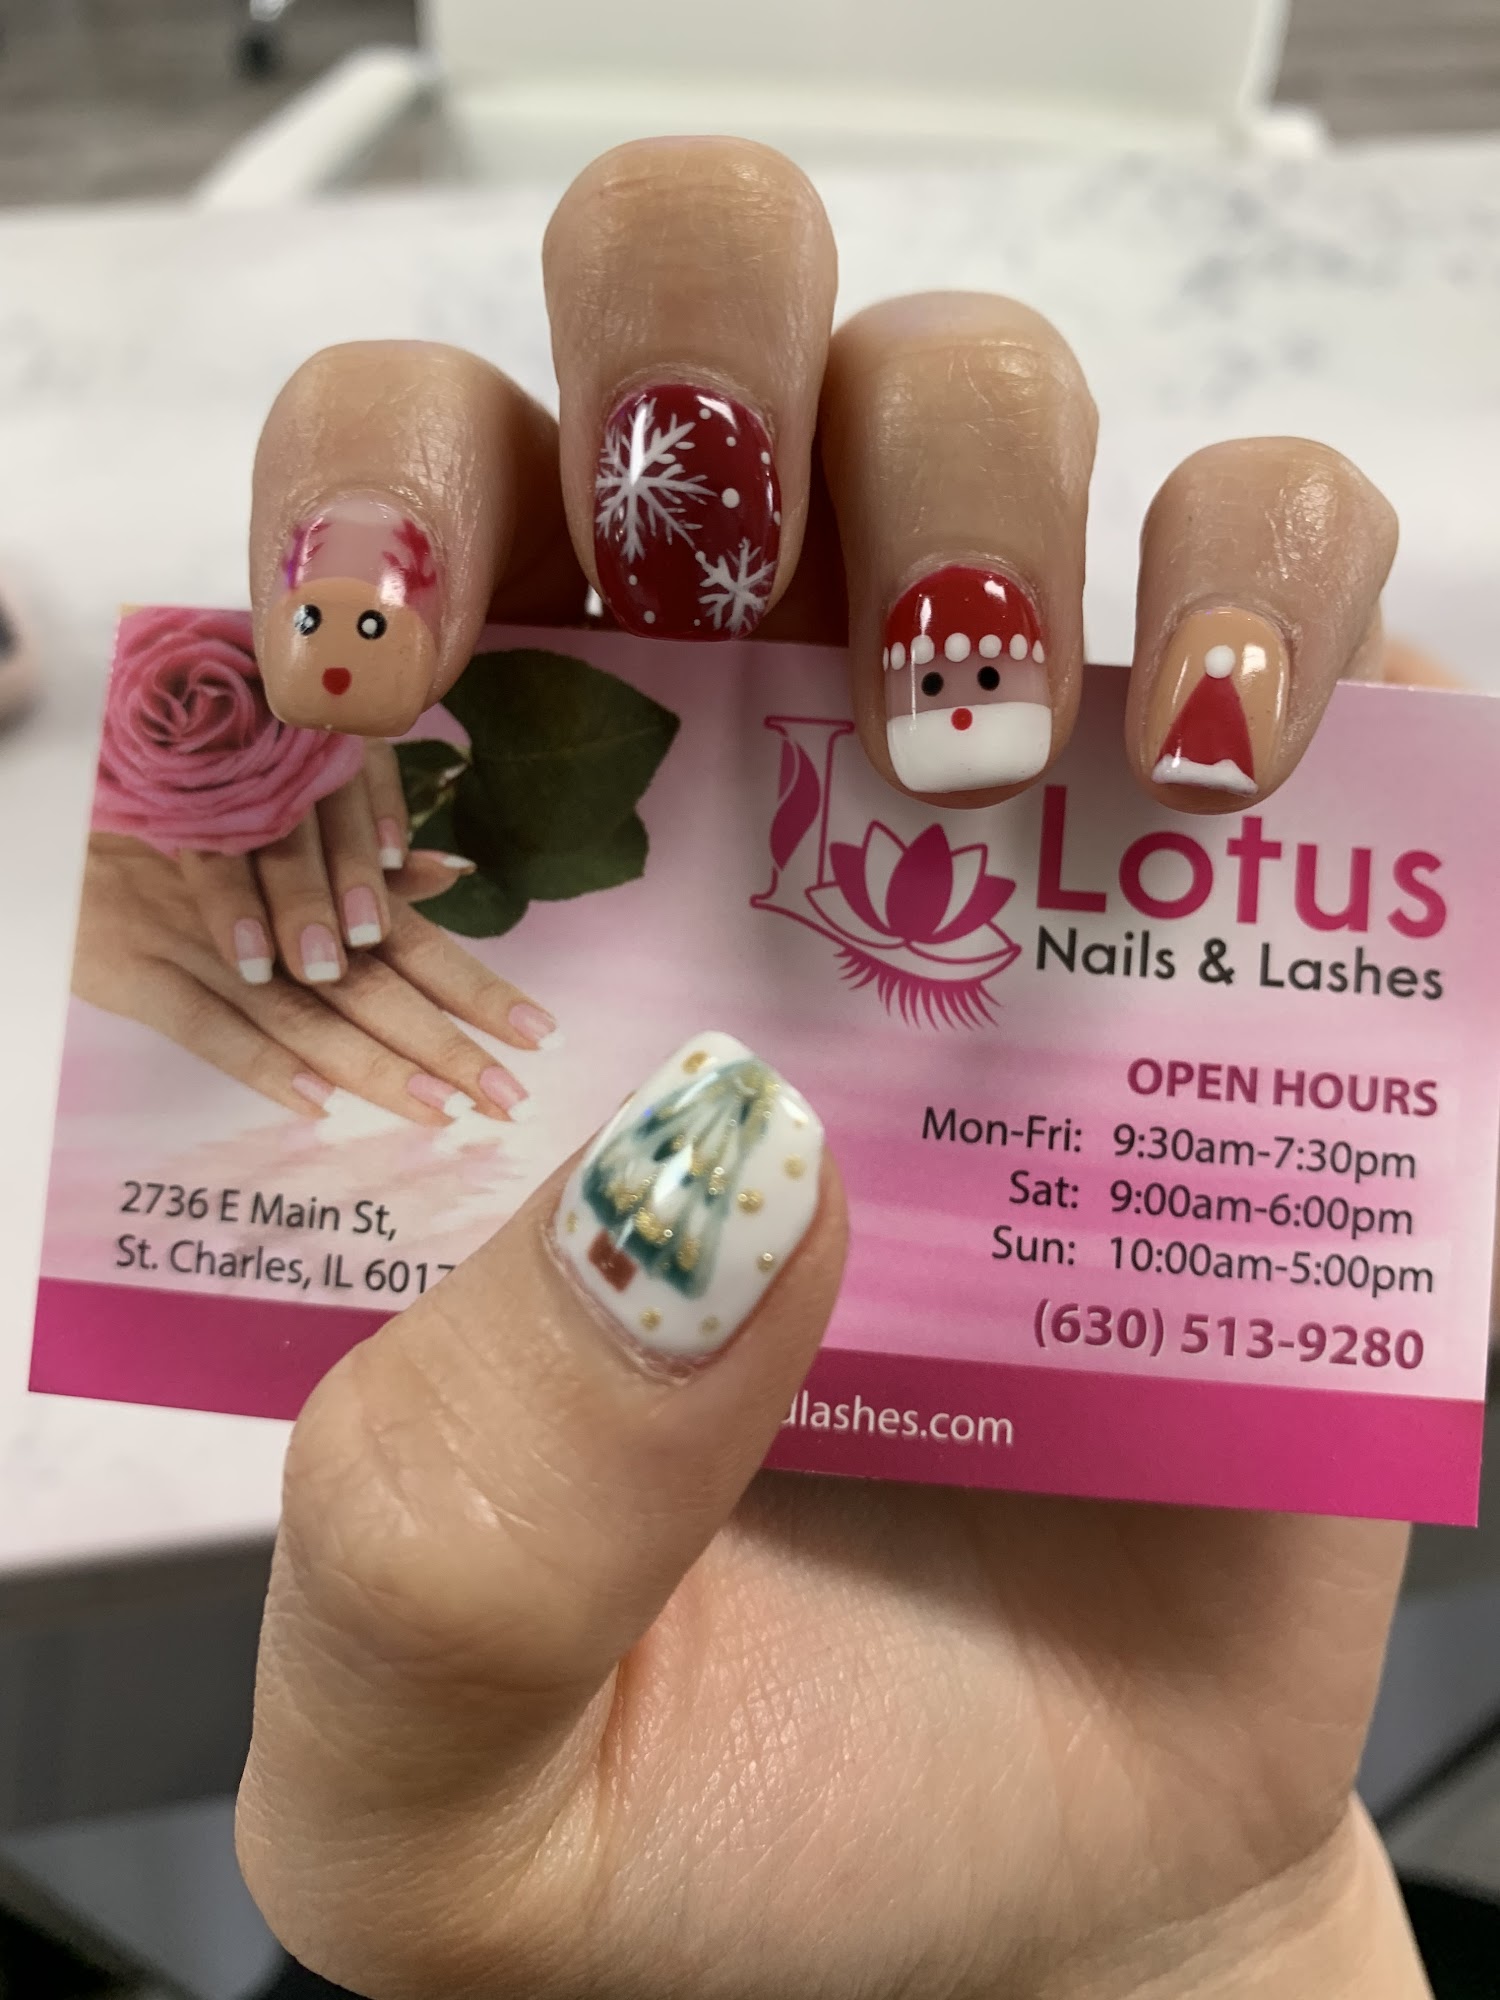 Lotus Nails & Lashes